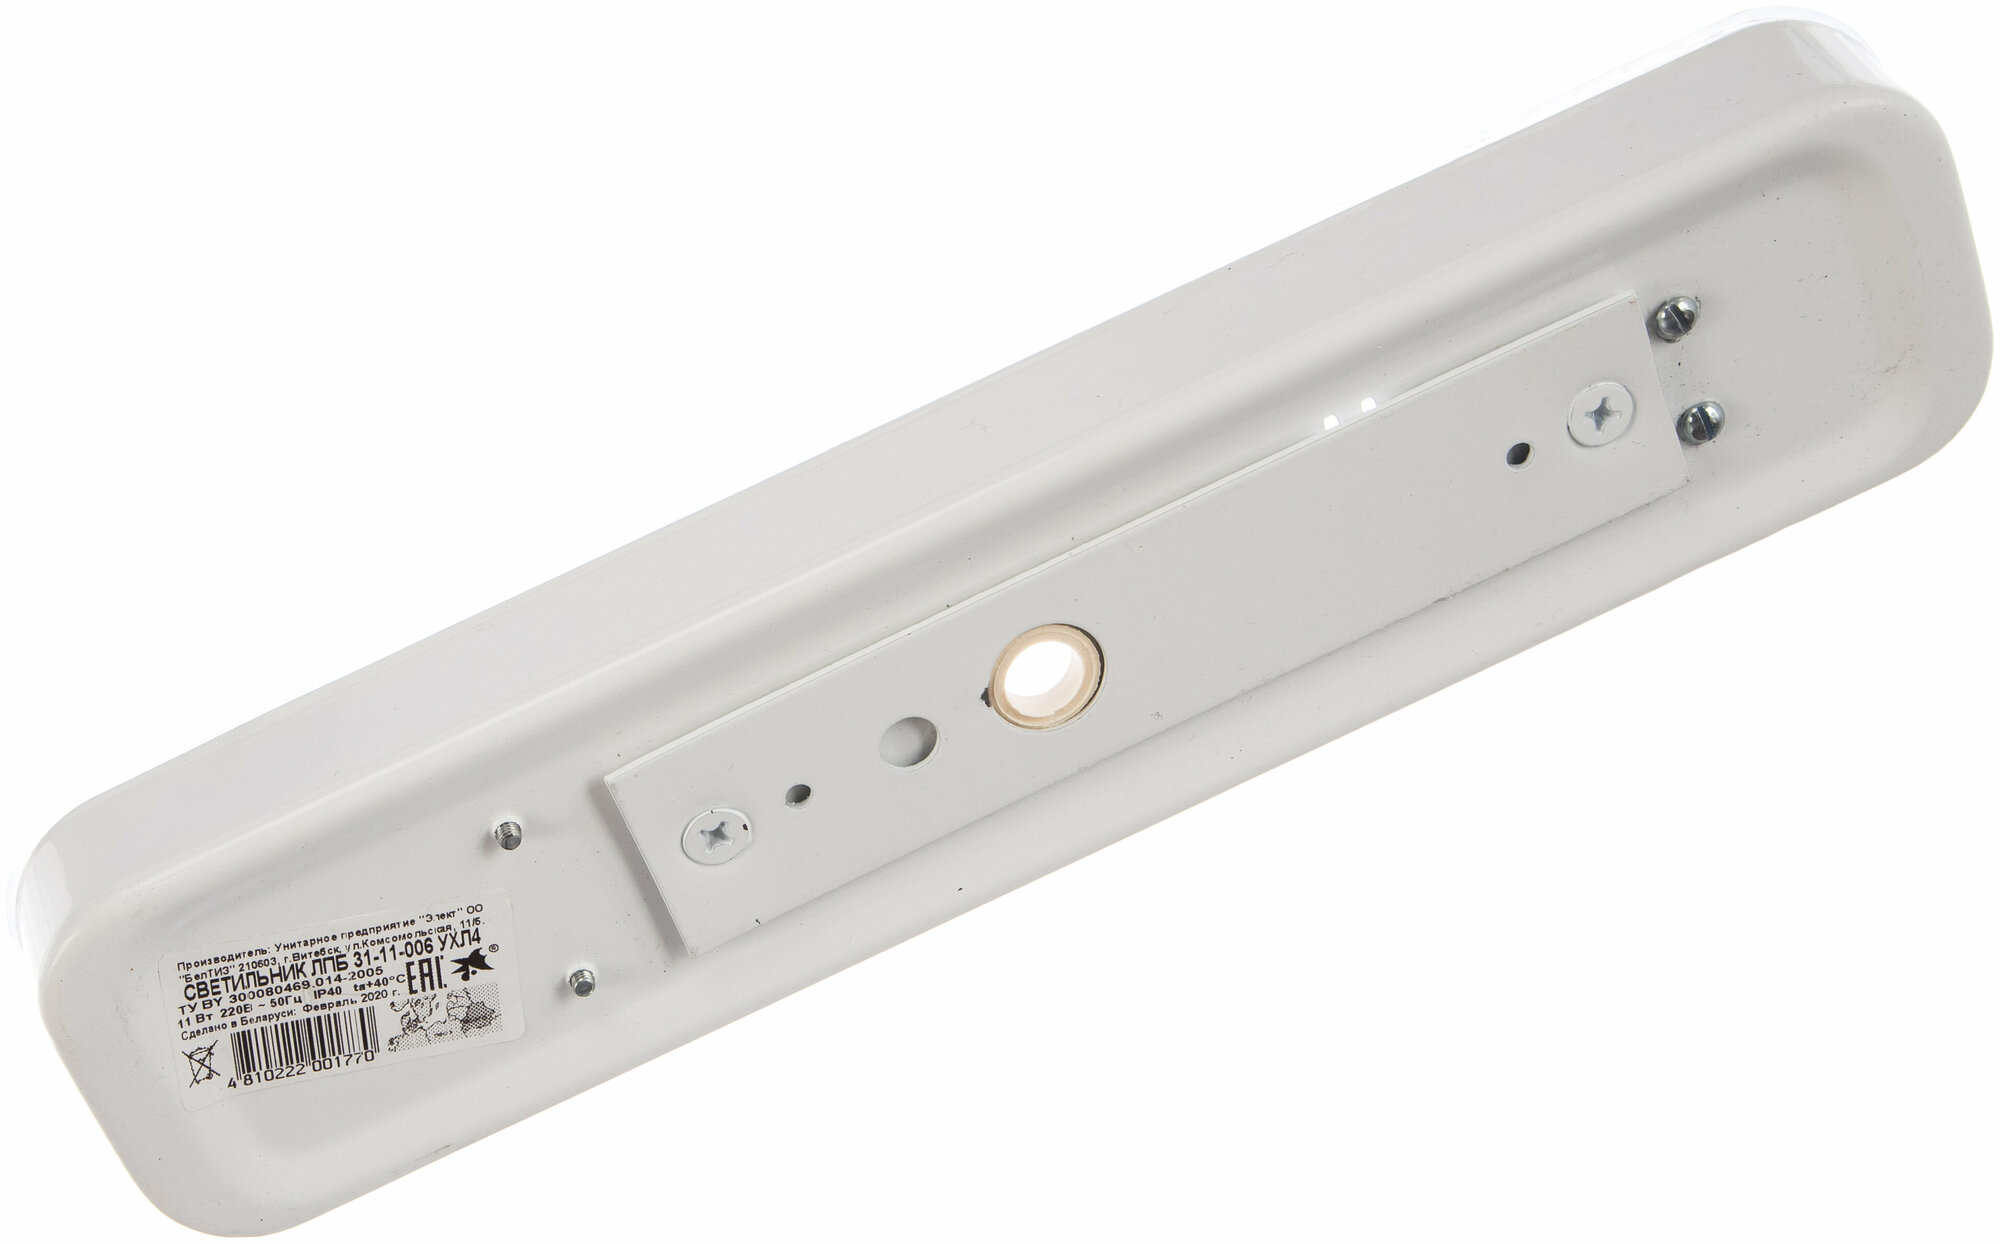 Настенно-потолочный светодиодный светильник Apeyron ДПБ 01-6-001 антивандальный в форме прямоугольника, цвет белый, мощность 6 Вт, световой поток 700 Лм, степень защиты IP40. - фотография № 15